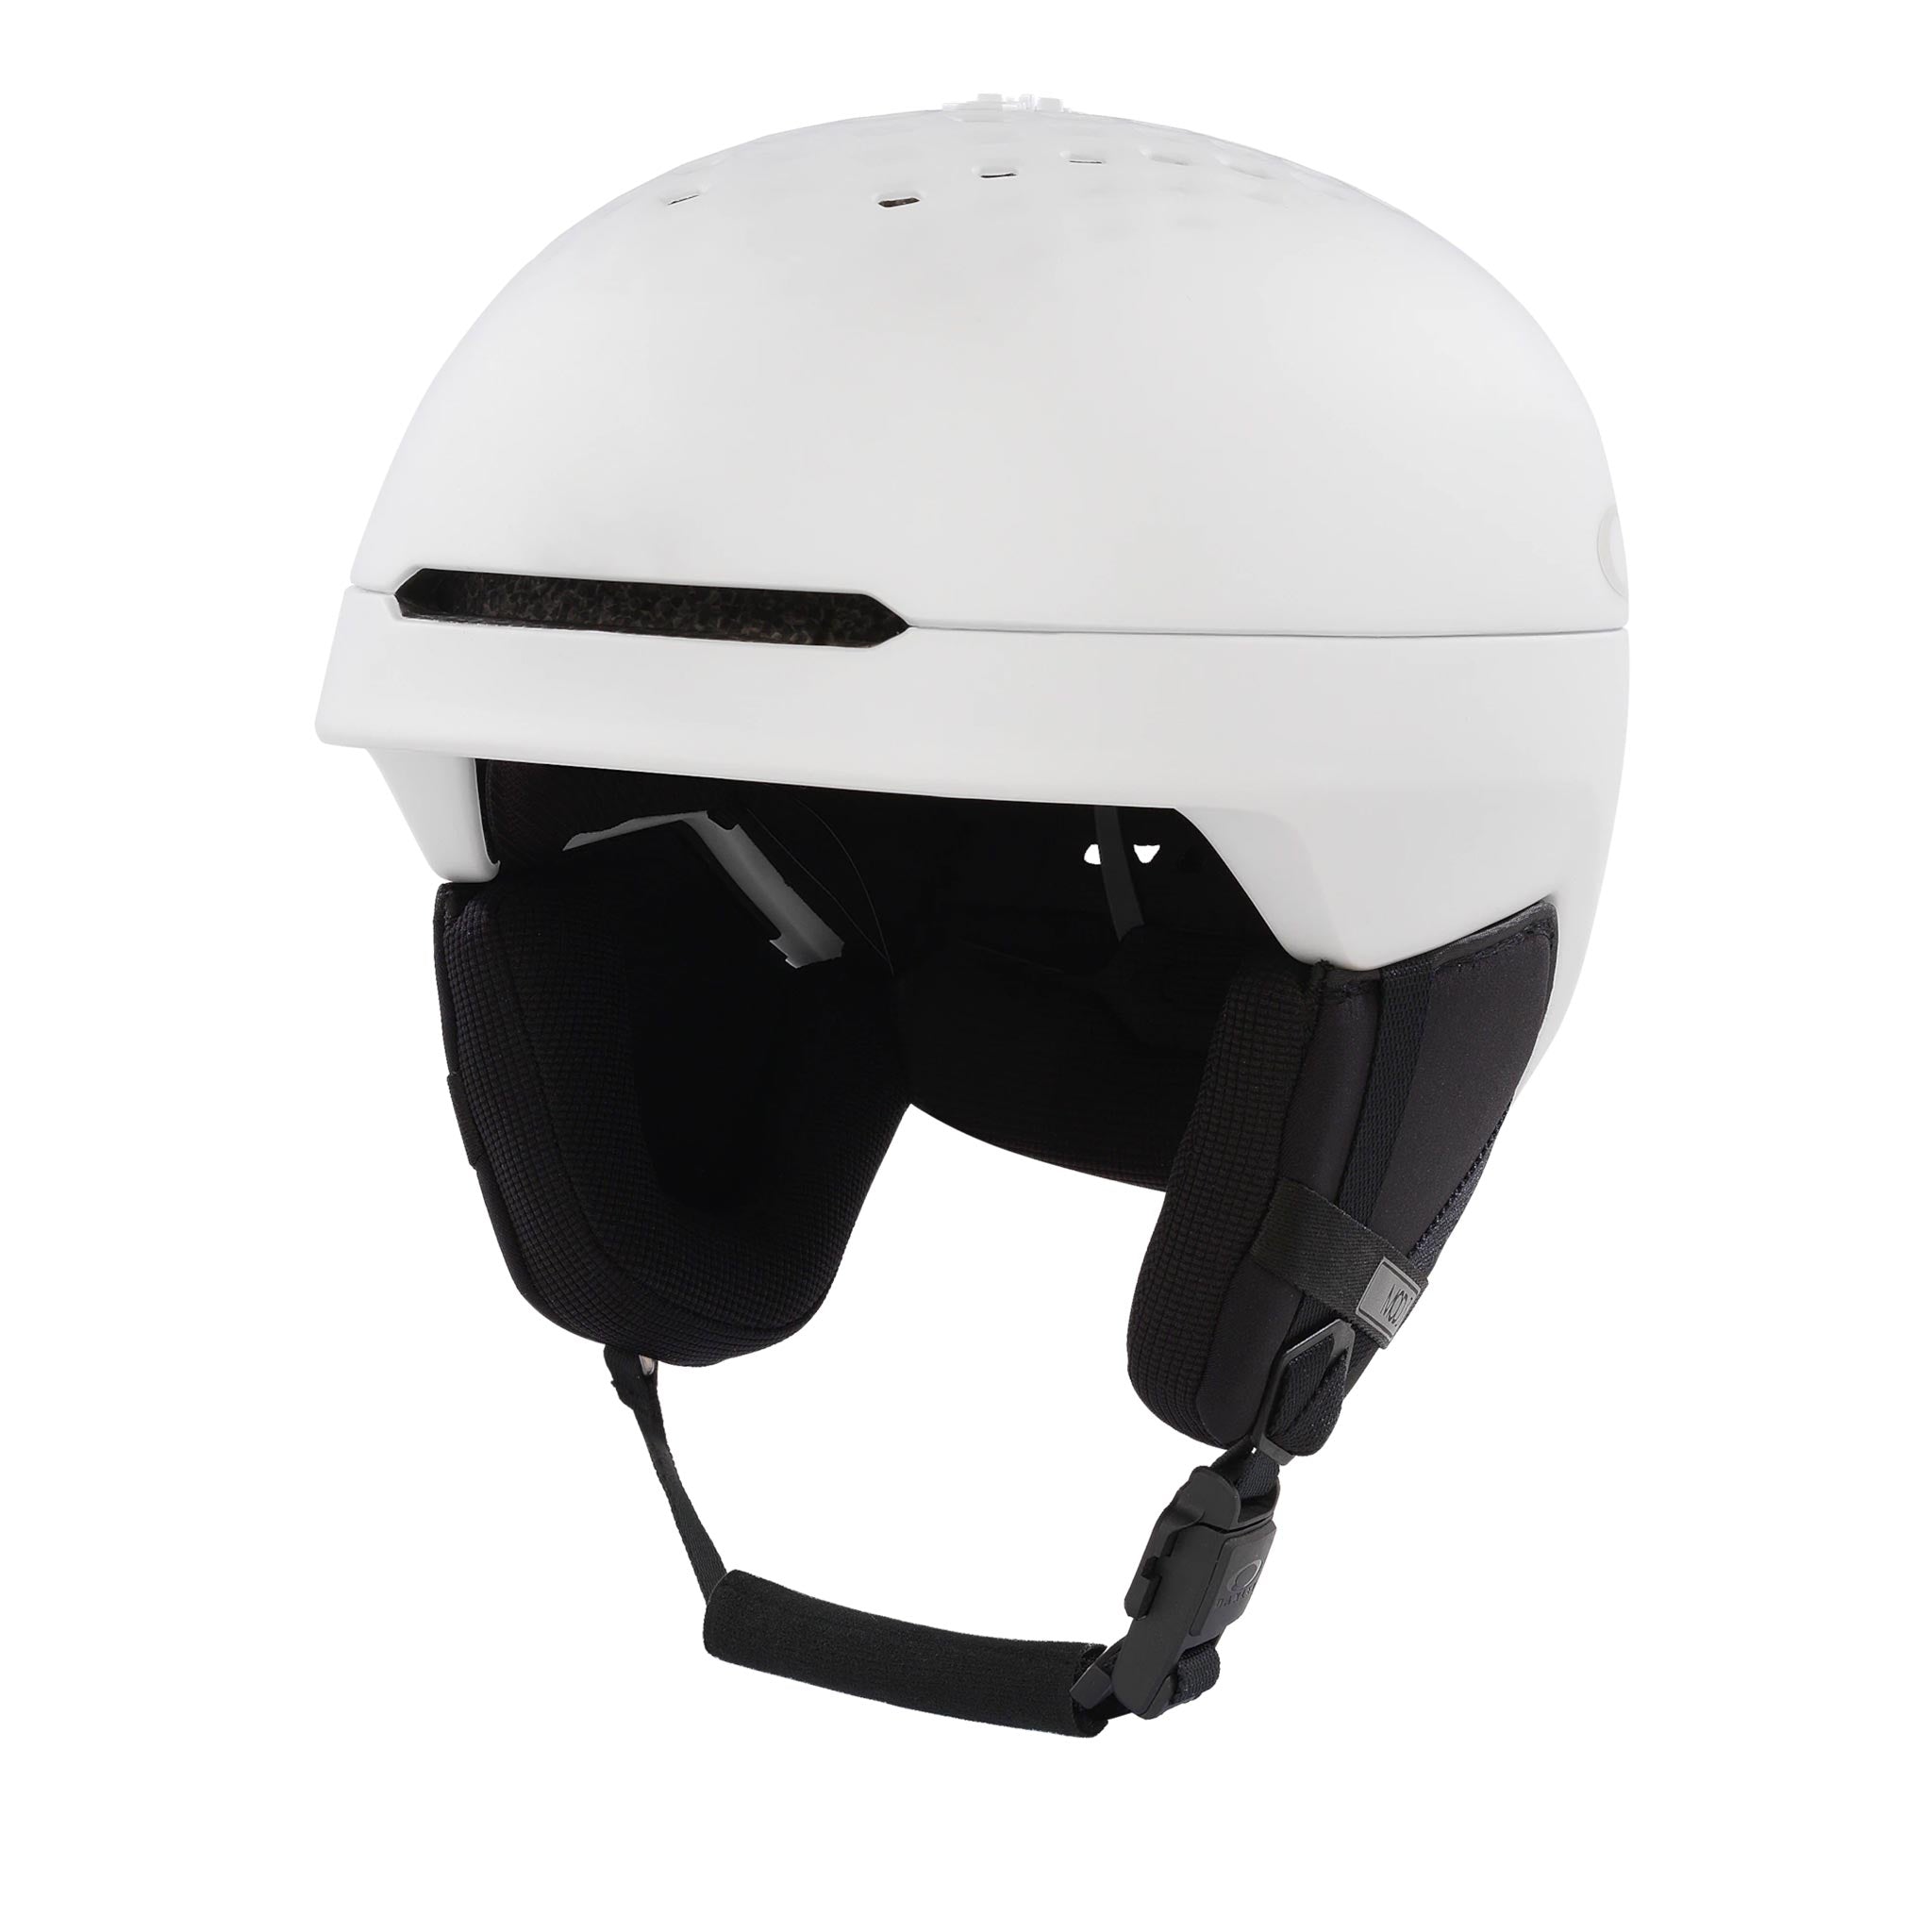 Mod3 MIPS Helmet in Matte White